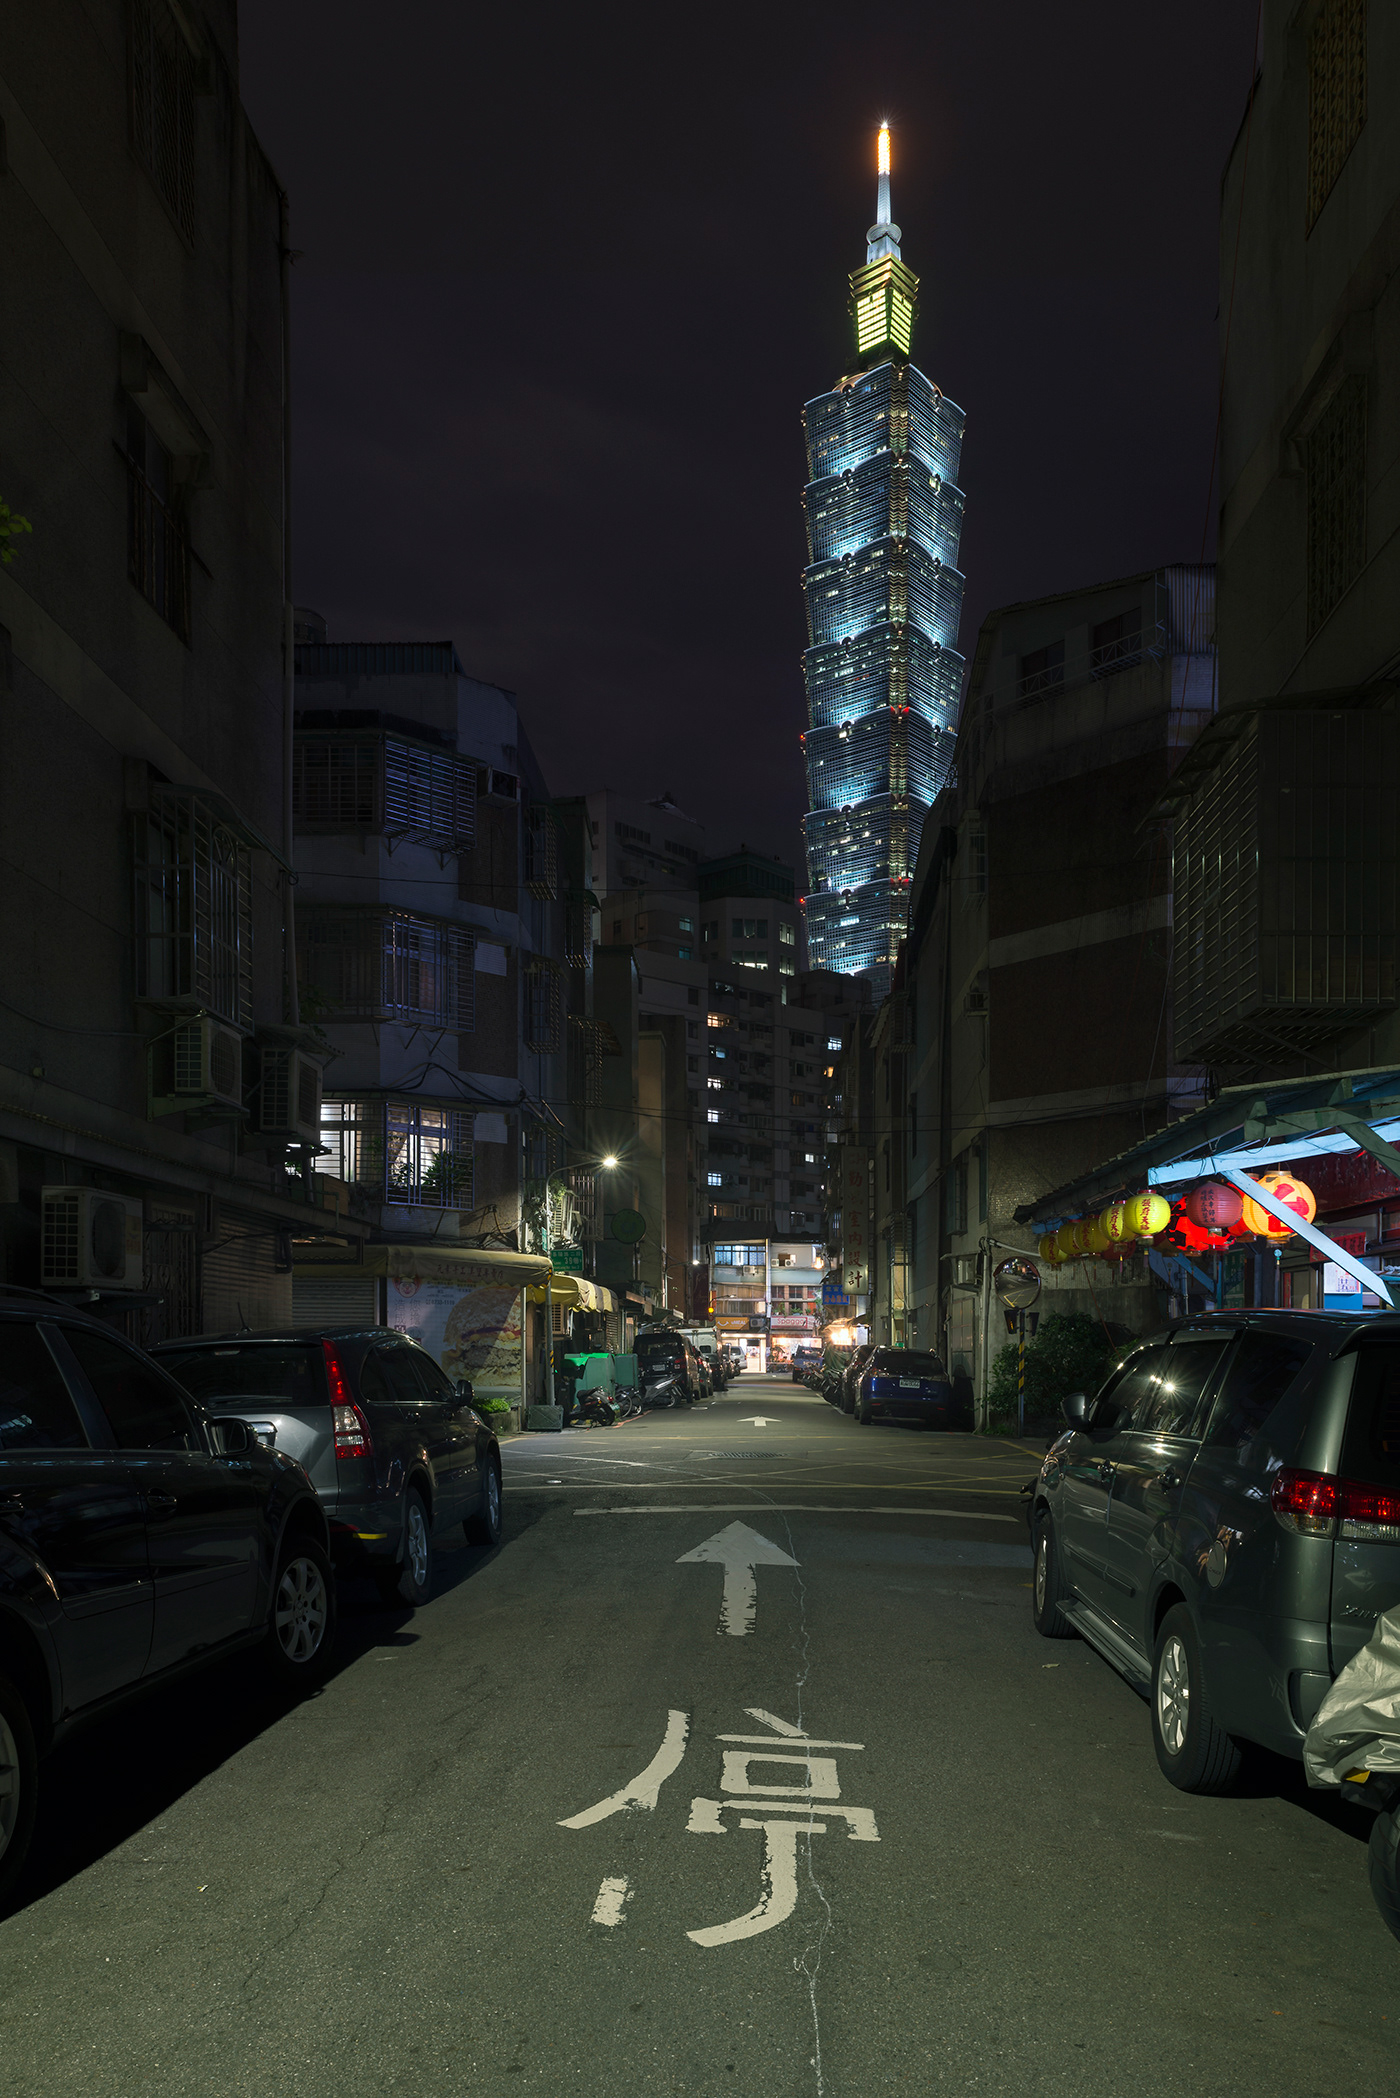 taiwan taipei taipei 101 asia city Urban night night photography Travel skyscraper